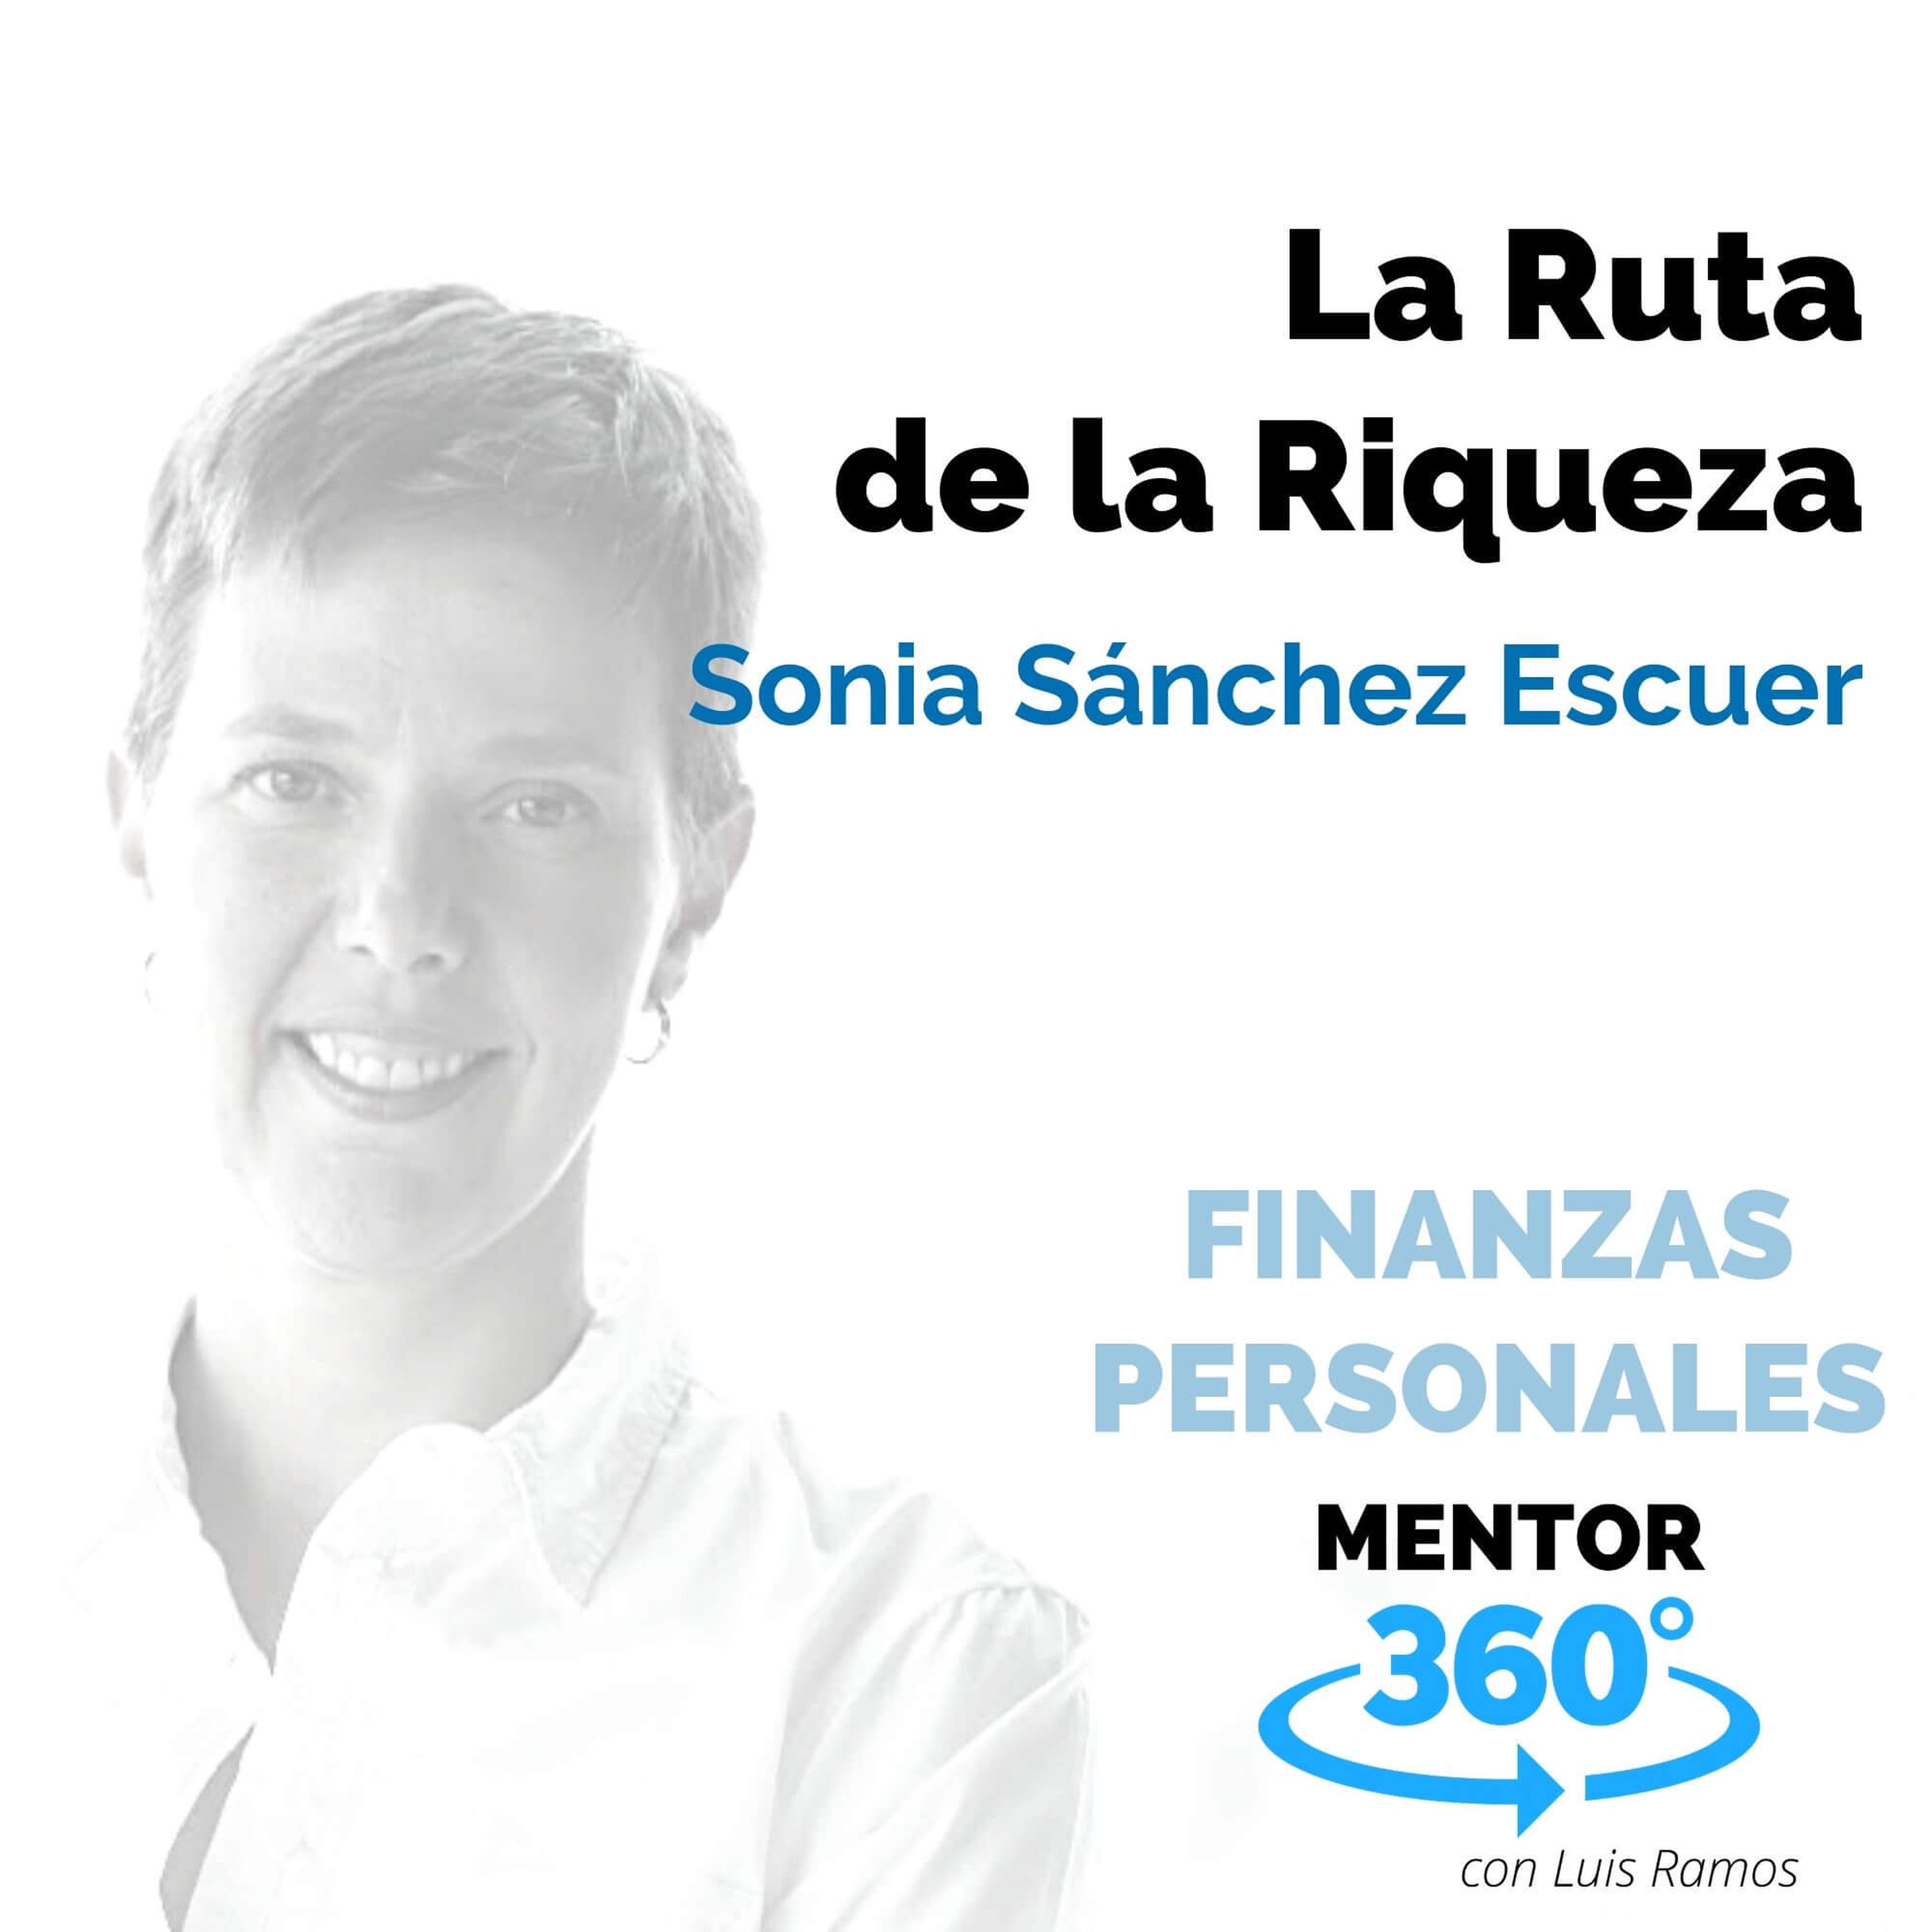 La Ruta de la Riqueza, con Sonia Sánchez Escuer - FINANZAS PERSONALES